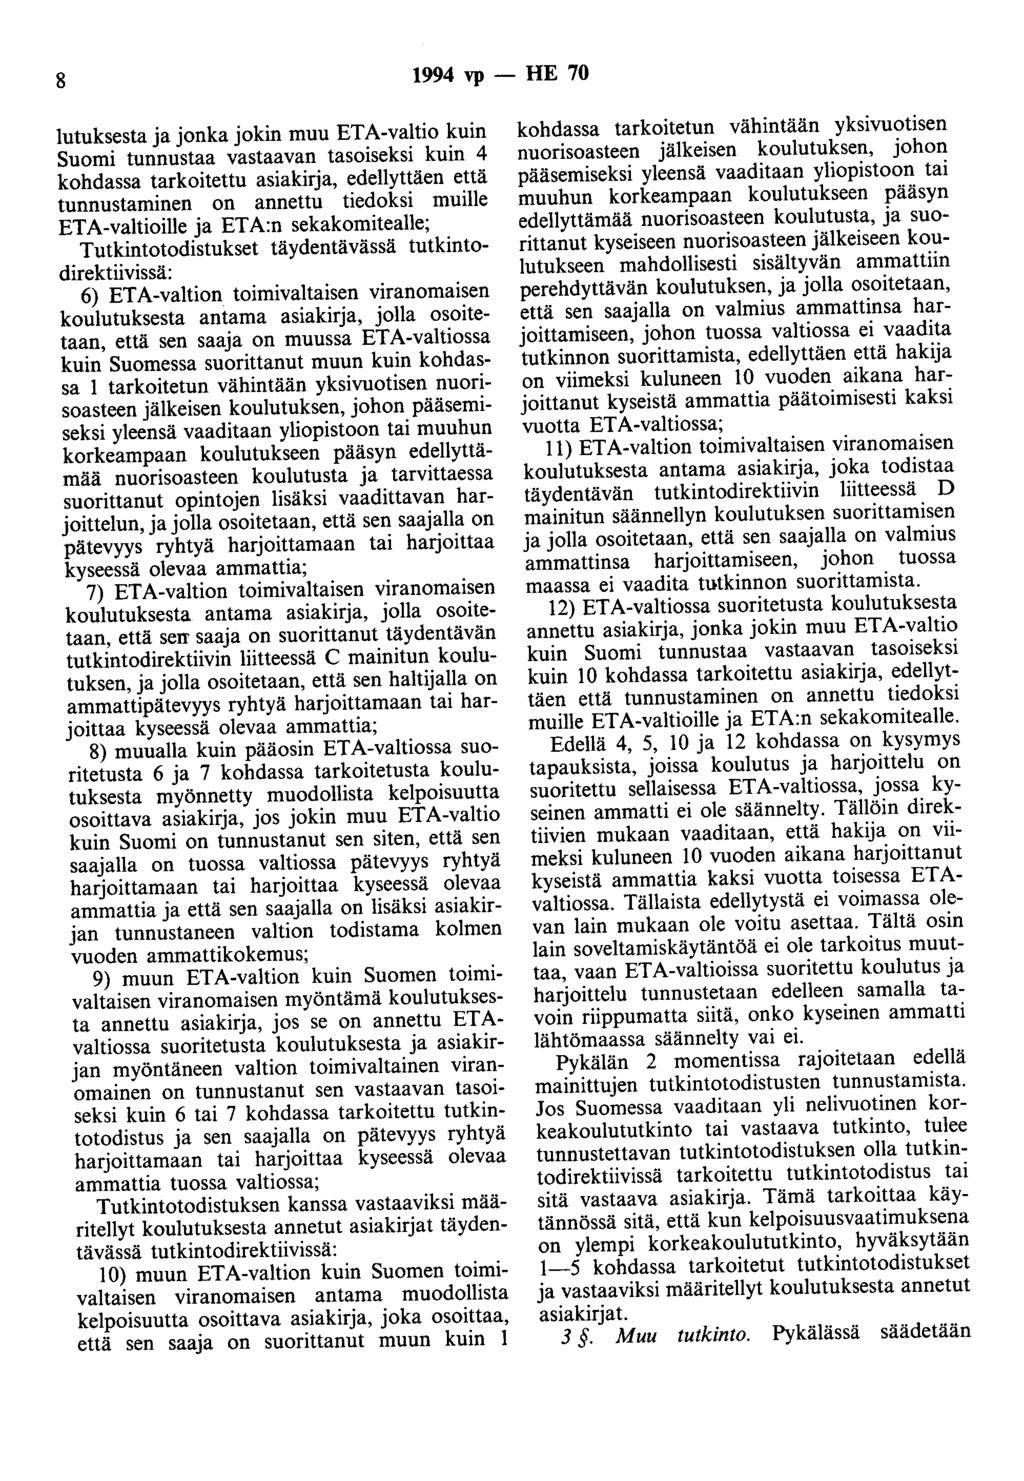 8 1994 vp - HE 70 lutuksesta ja jonka jokin muu ETA-valtio kuin Suomi tunnustaa vastaavan tasoiseksi kuin 4 kohdassa tarkoitettu asiakirja, edellyttäen että tunnustaminen on annettu tiedoksi muille